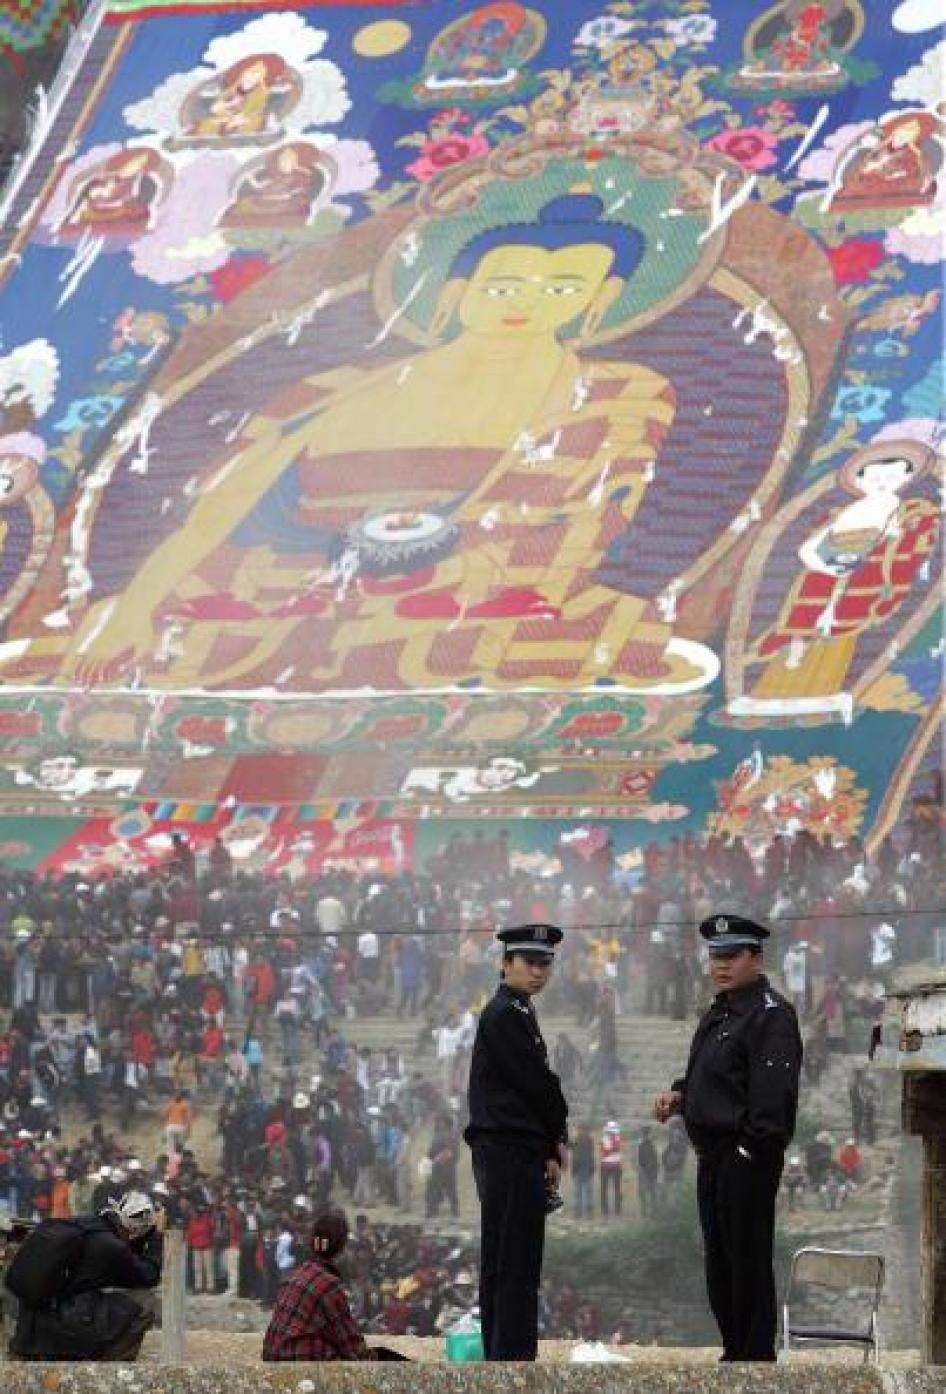 巨型释迦牟尼唐卡于西藏拉萨近郊展出，数名警员从哲蚌寺屋顶监视前来礼佛的群众。